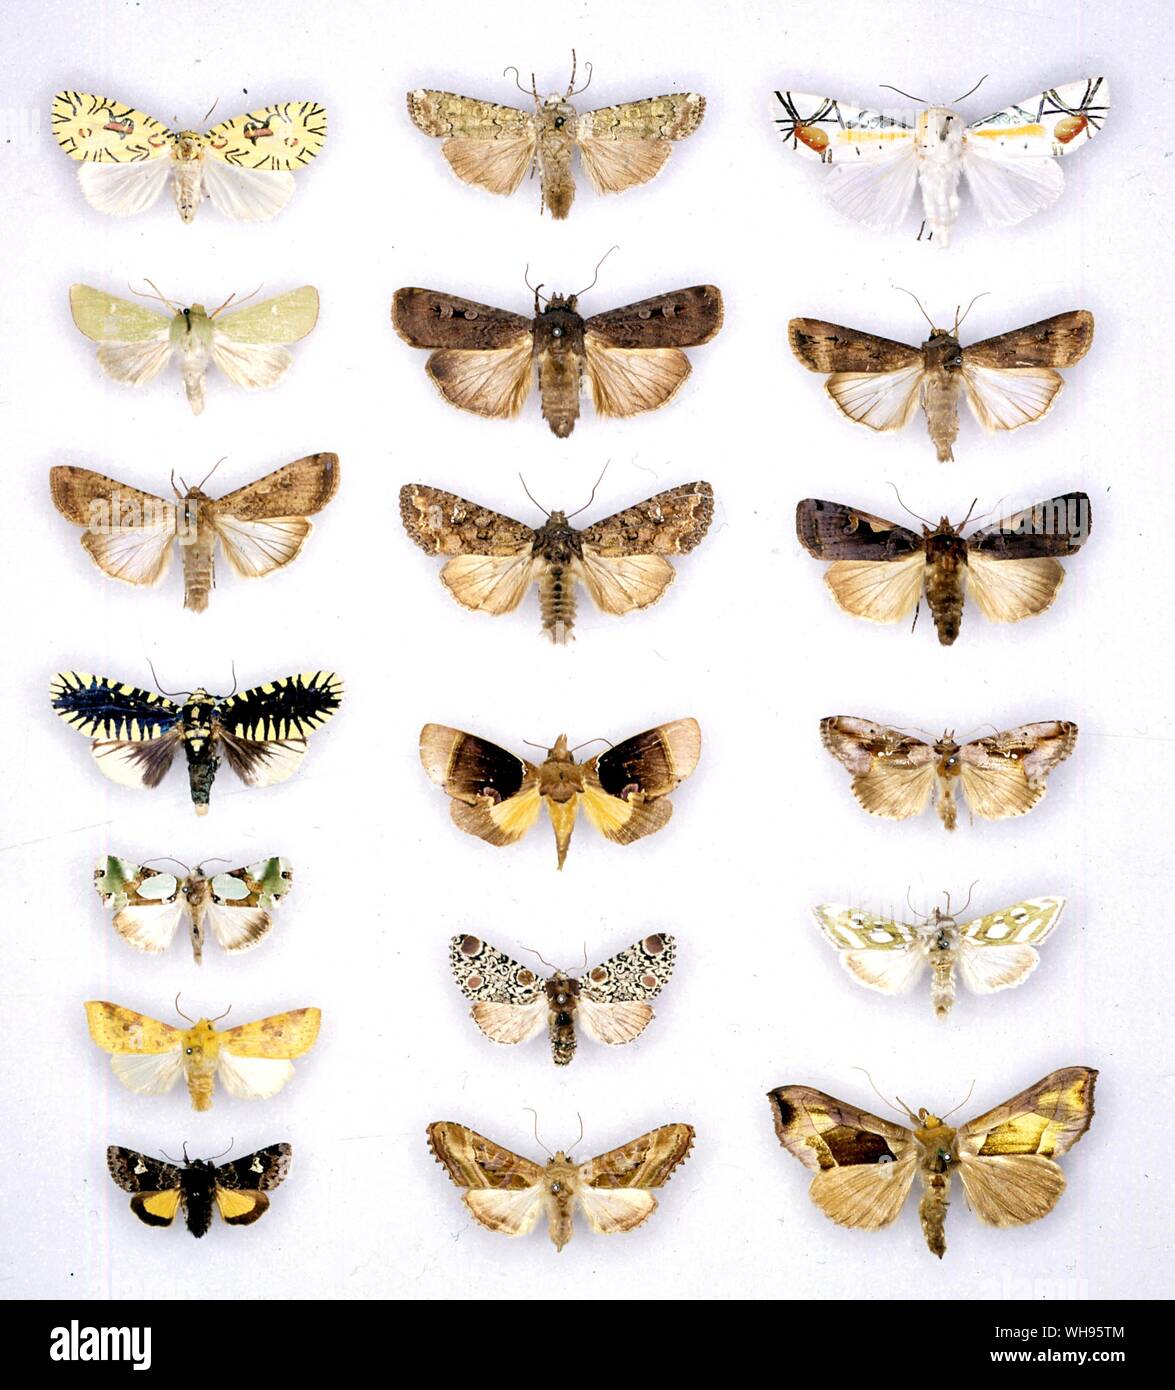 Butterflies/moths - (left top to bottom) Mazuca strigicincta, Calamia tridens, Peridroma saucia, Apsarasa radians, Nacna malachitis, Xanthia flavago, Anarta cordigera - (middle top to bottom) Ochropleura praecox, Agrotis infusa, Mamestra brassicae, Gonodonta distincta, Harrisimemna trisignata, Phlogophora iris - (right top to bottom) Baorisa hieroglyphica, Agrotis ipsilon, Amathes c-nigrum, Eosphoropteryx thyatiroides, Argyritis argentea, Plusia balluca Stock Photo